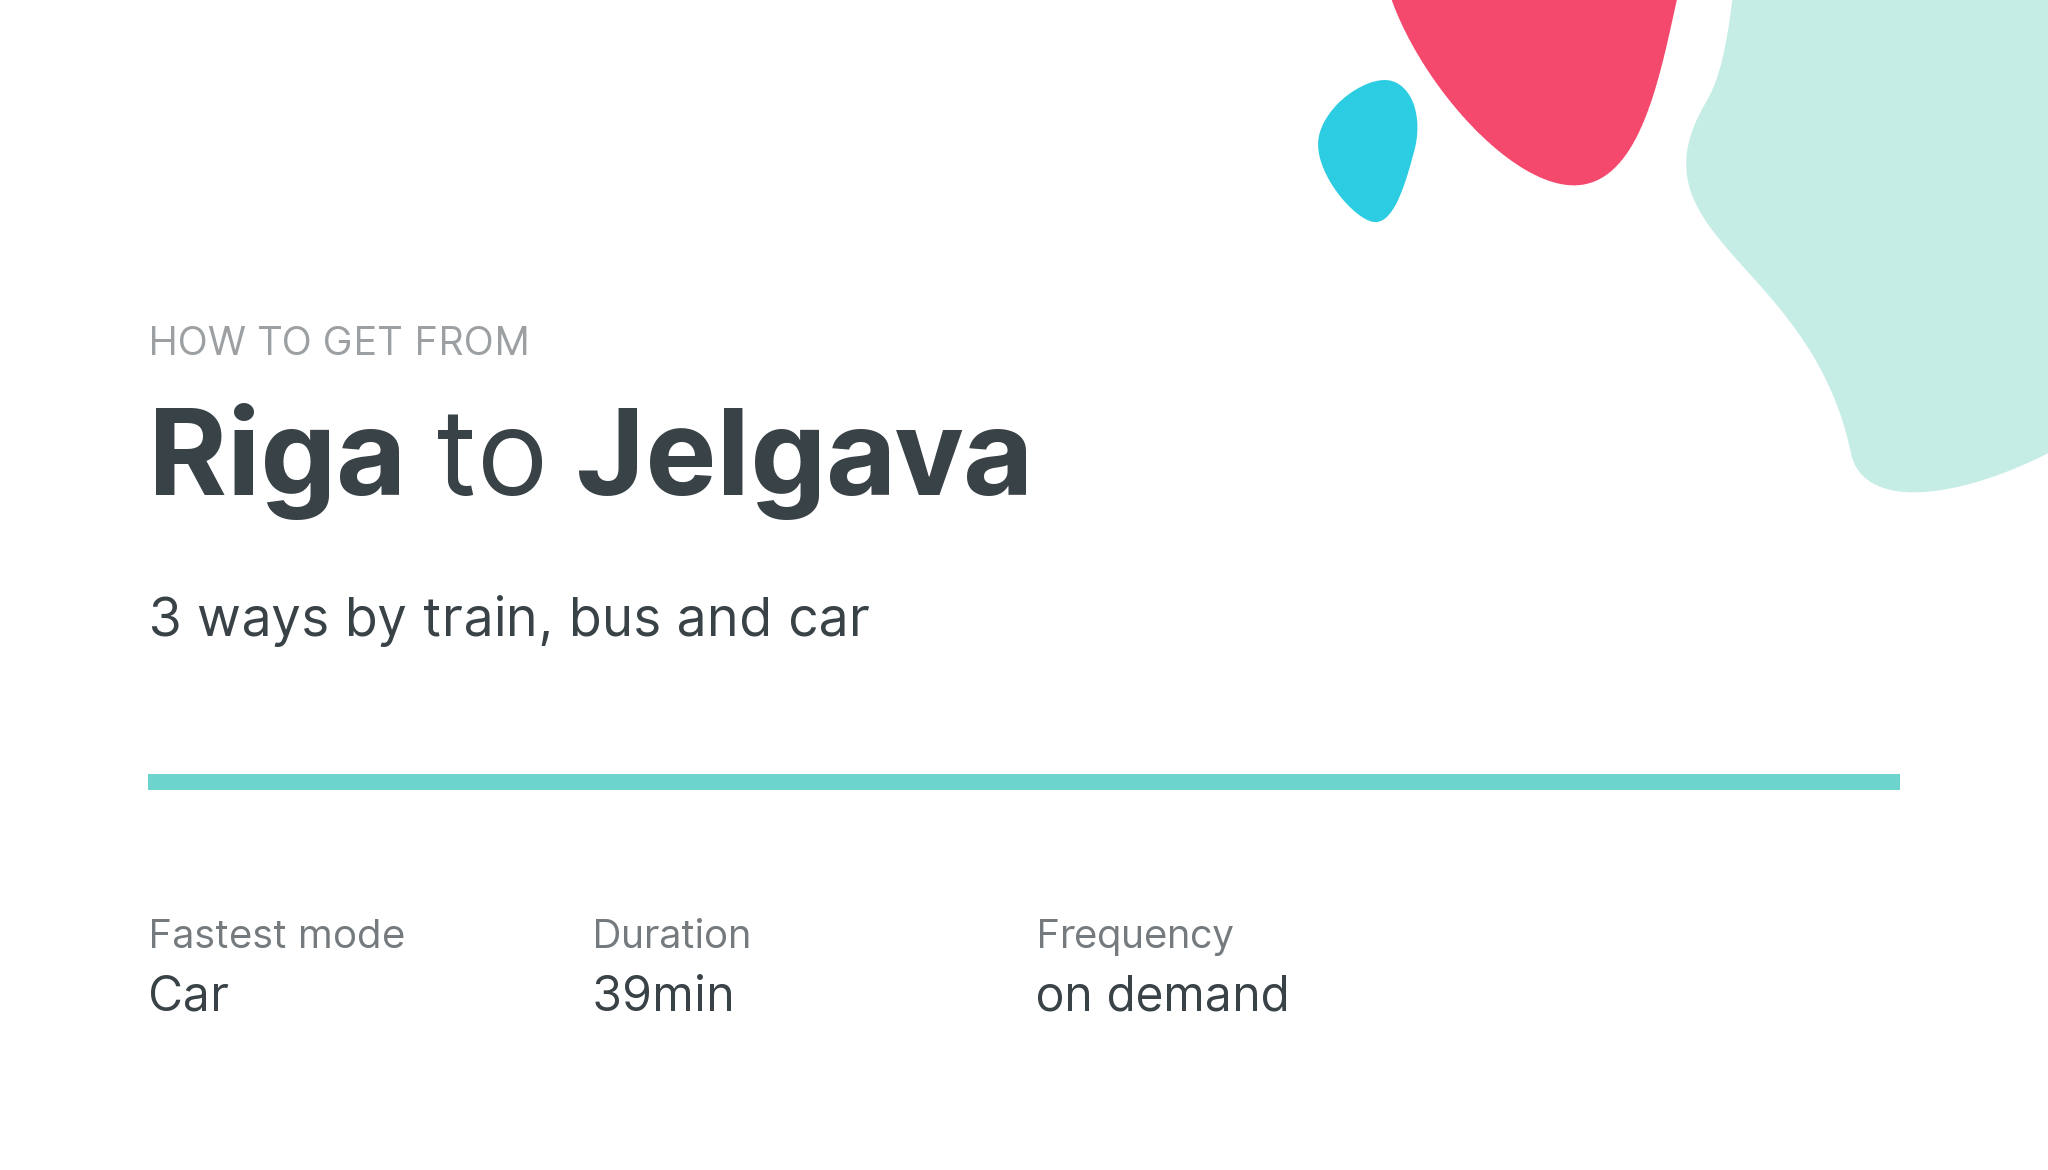 How do I get from Riga to Jelgava